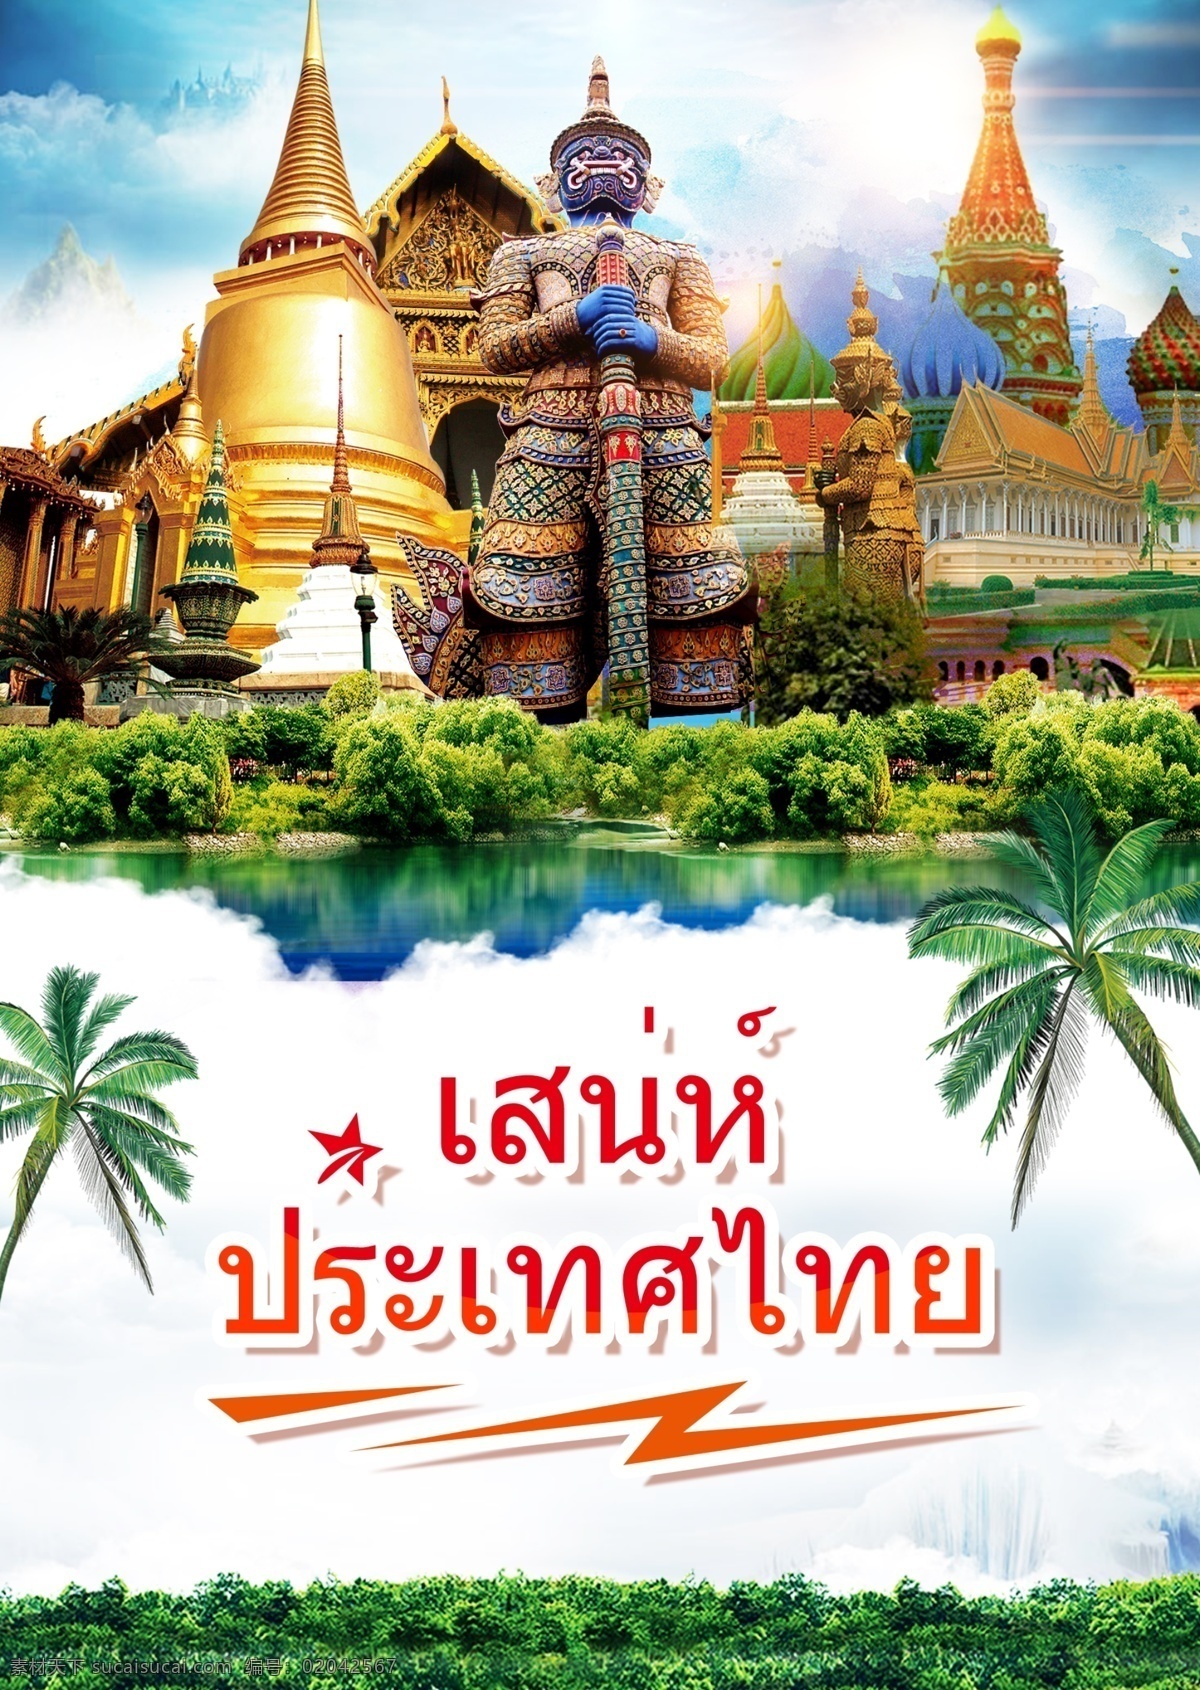 手绘 泰国 旅游景点 泰国建筑 宏伟的宫殿 景区 旅游 度假 泰国的魅力 雕塑 cocon